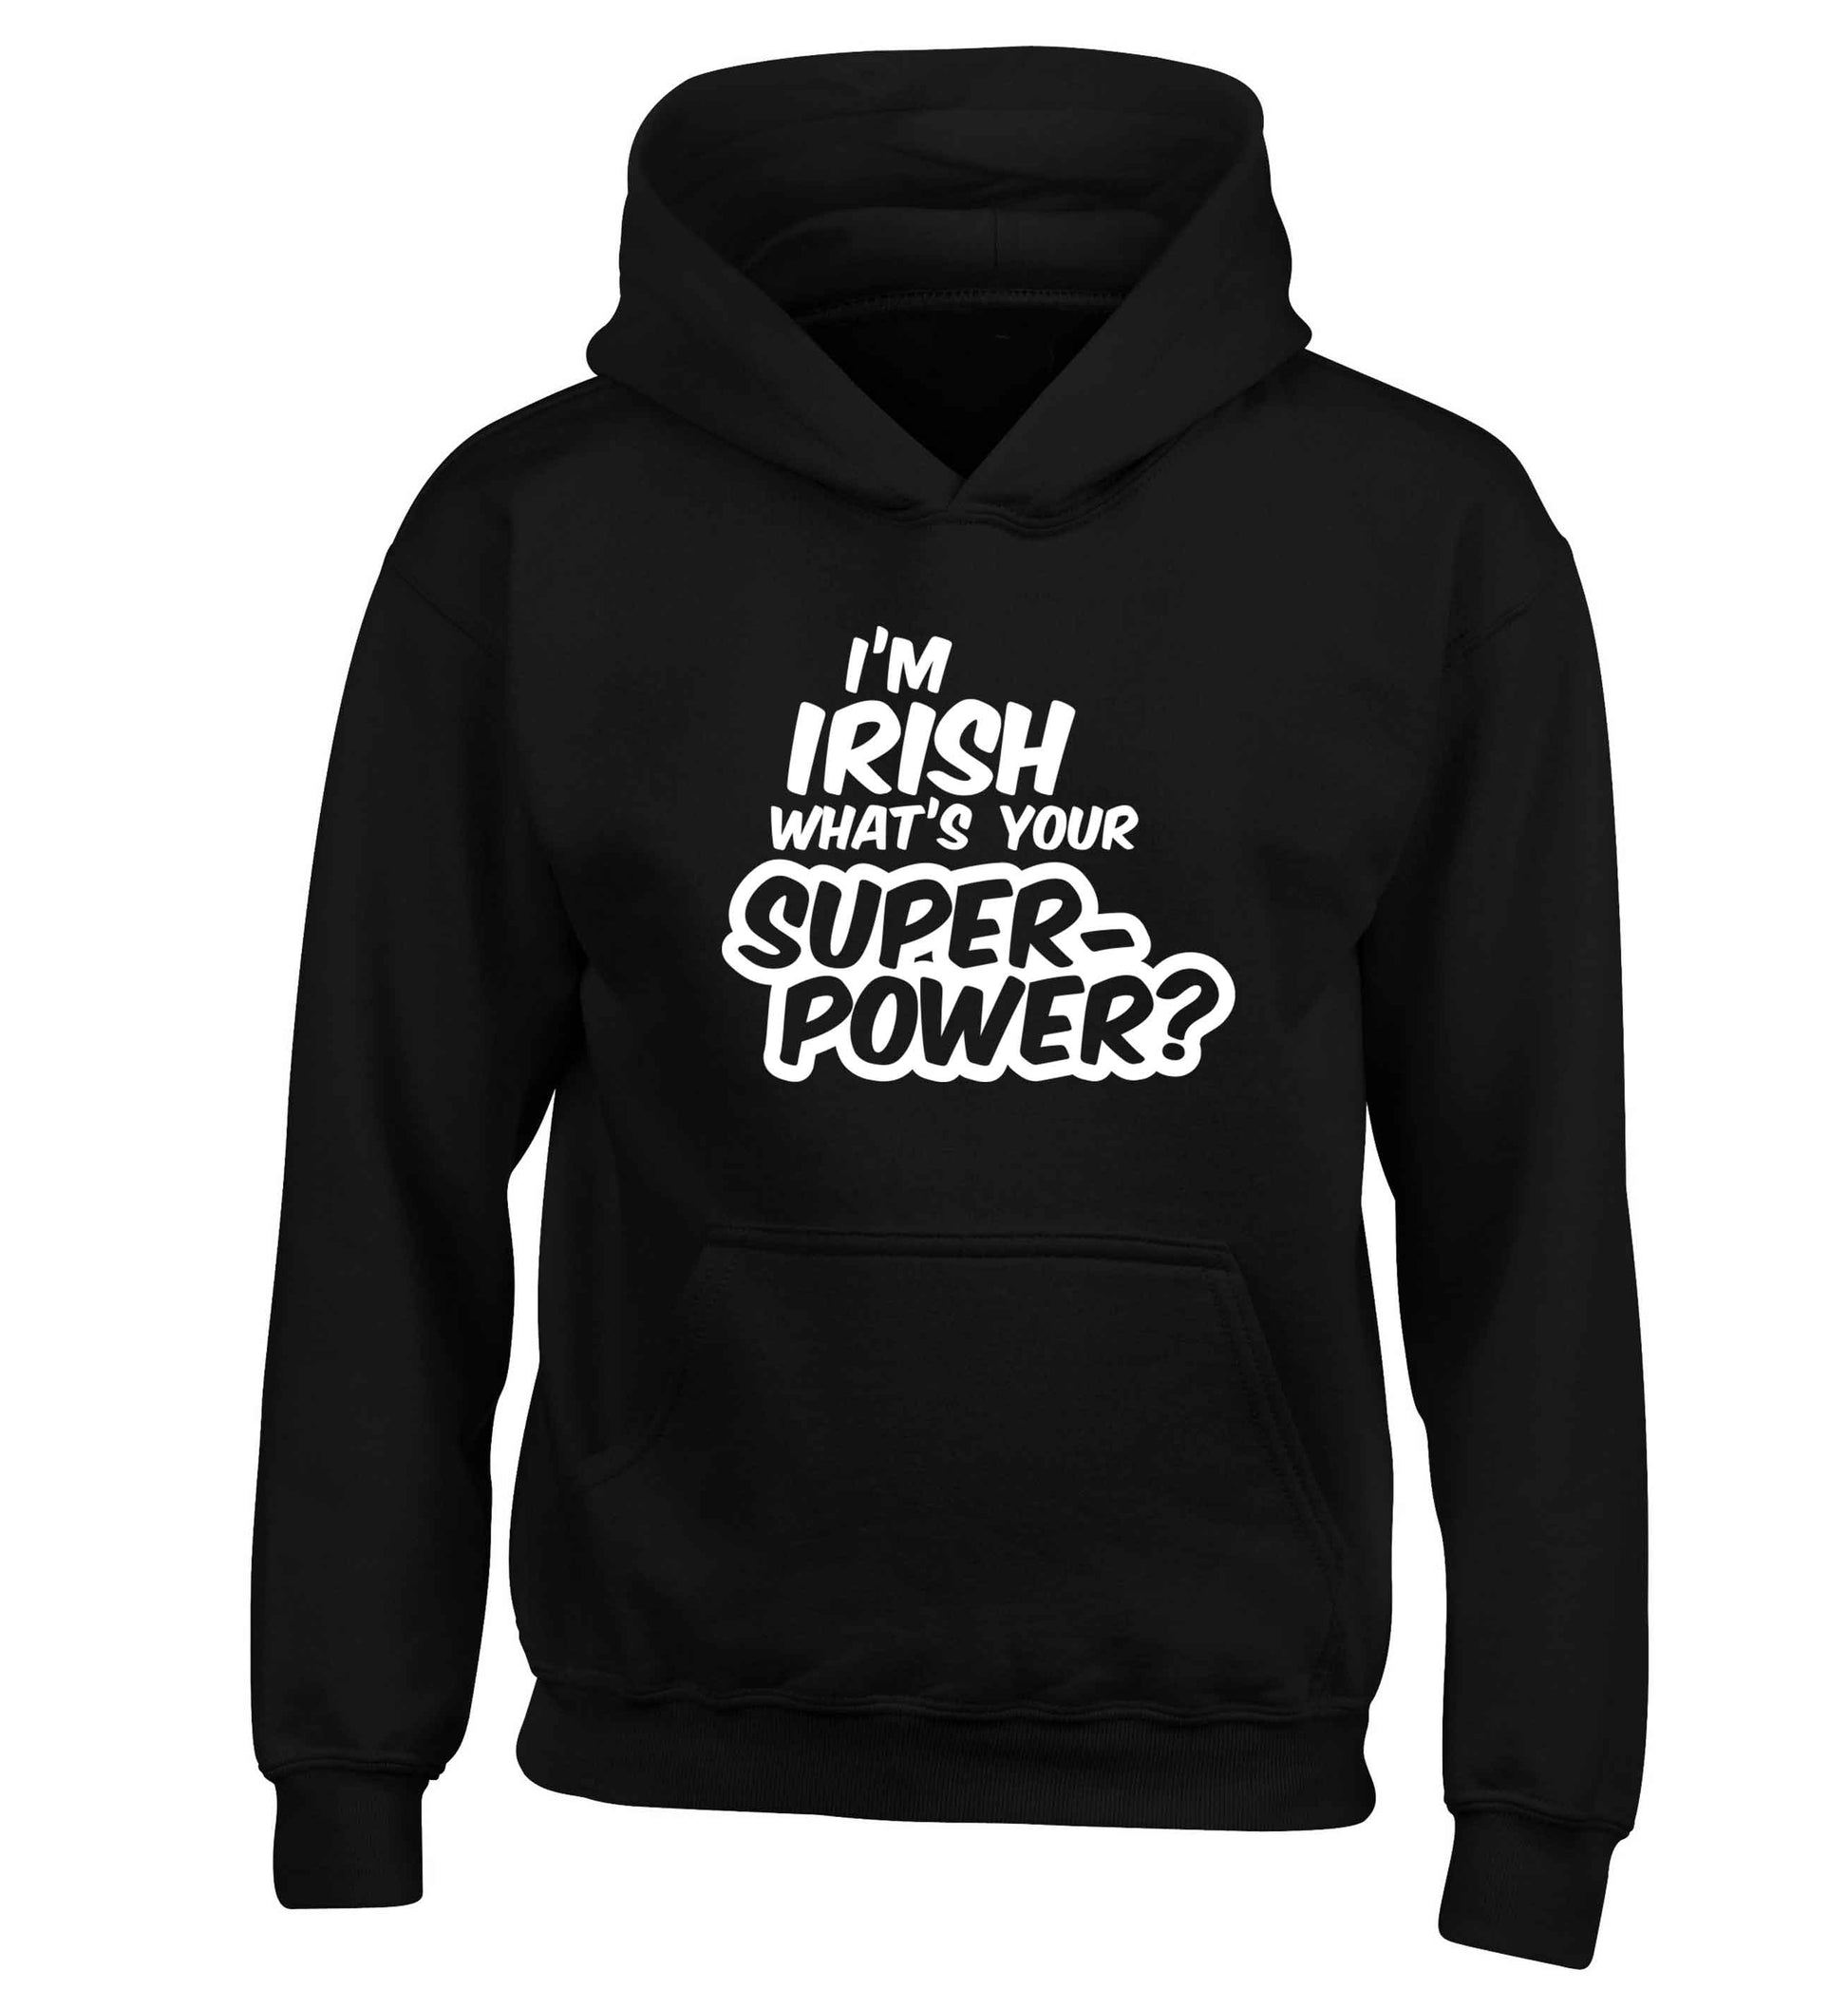 I'm Irish what's your superpower? children's black hoodie 12-13 Years